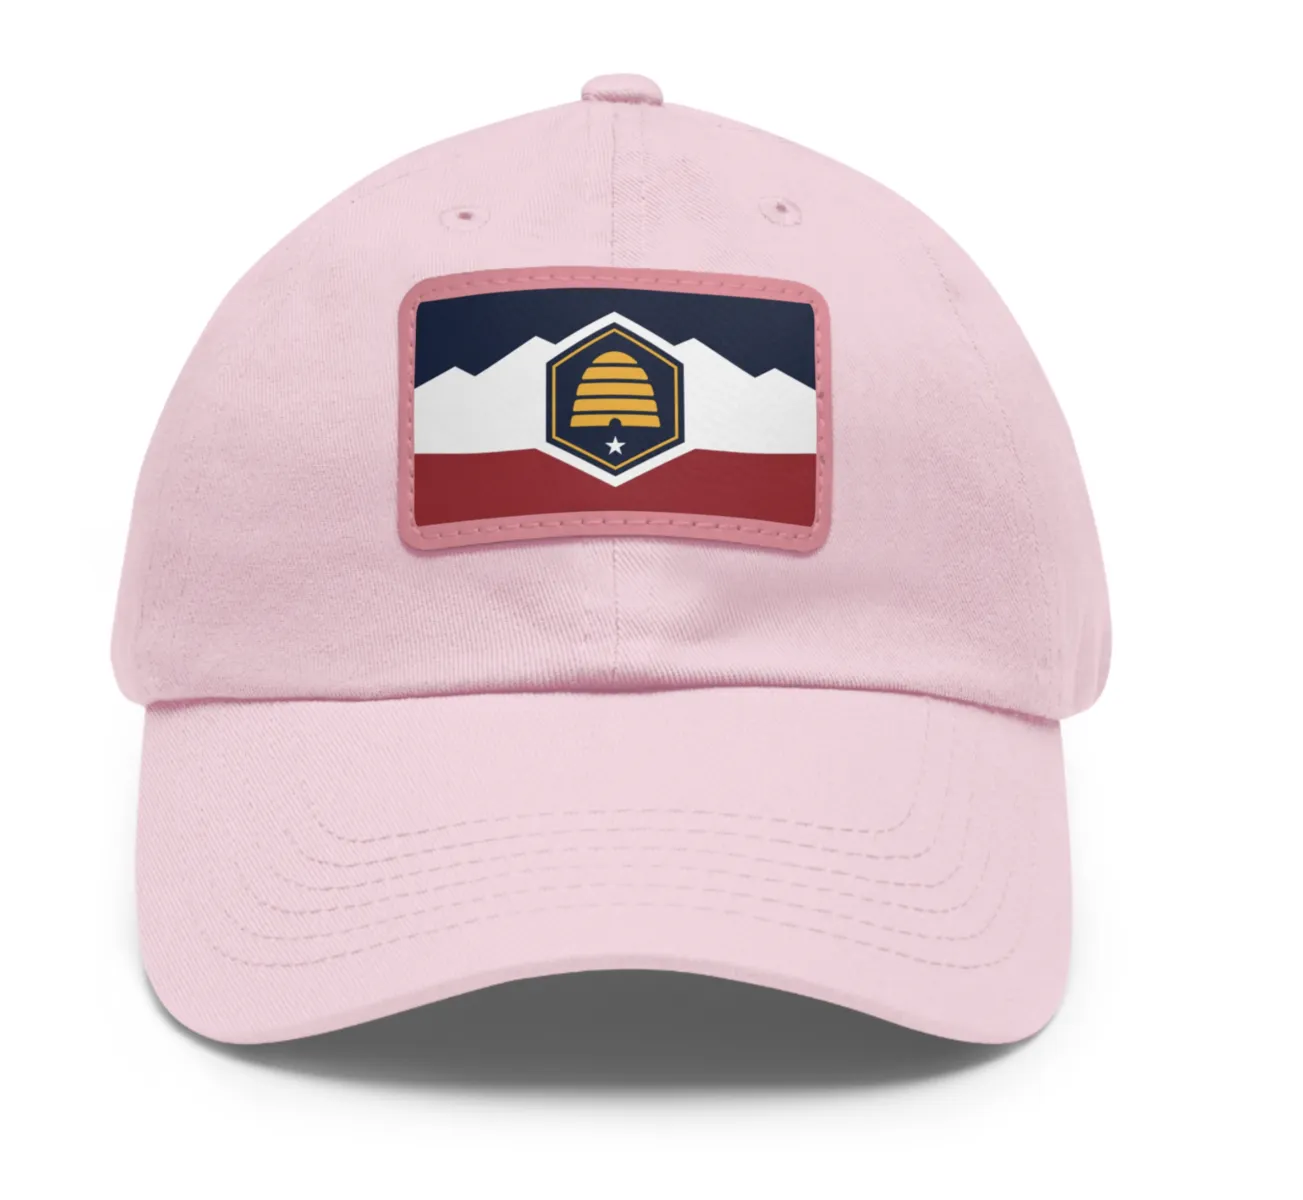 New Utah Flag Baseball Cap Hat - Pink